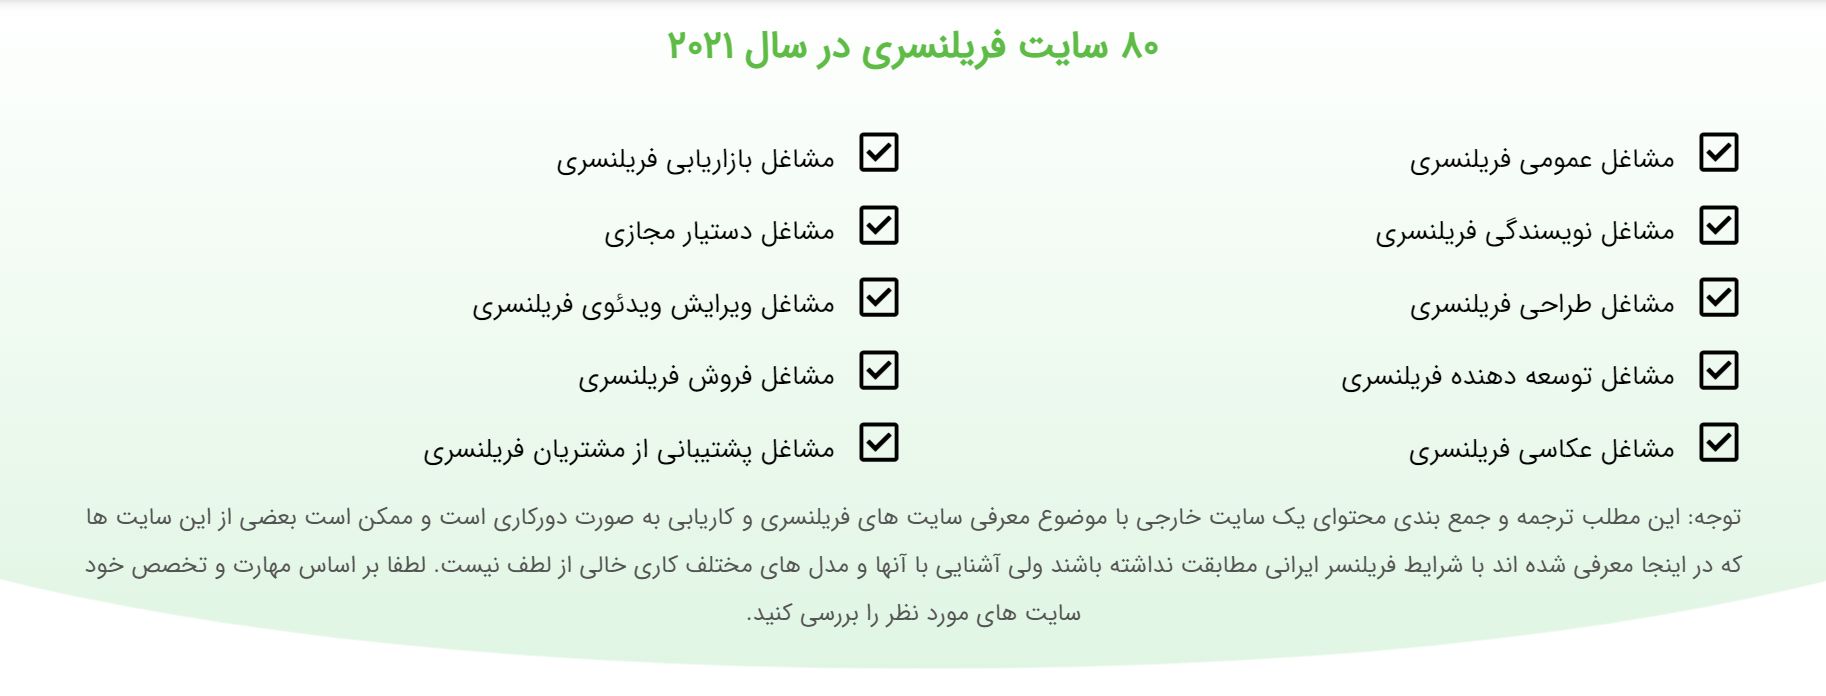 بهترین روش های کسب درآمد دلاری از فریلنسری در ایران ویژه سال 2021